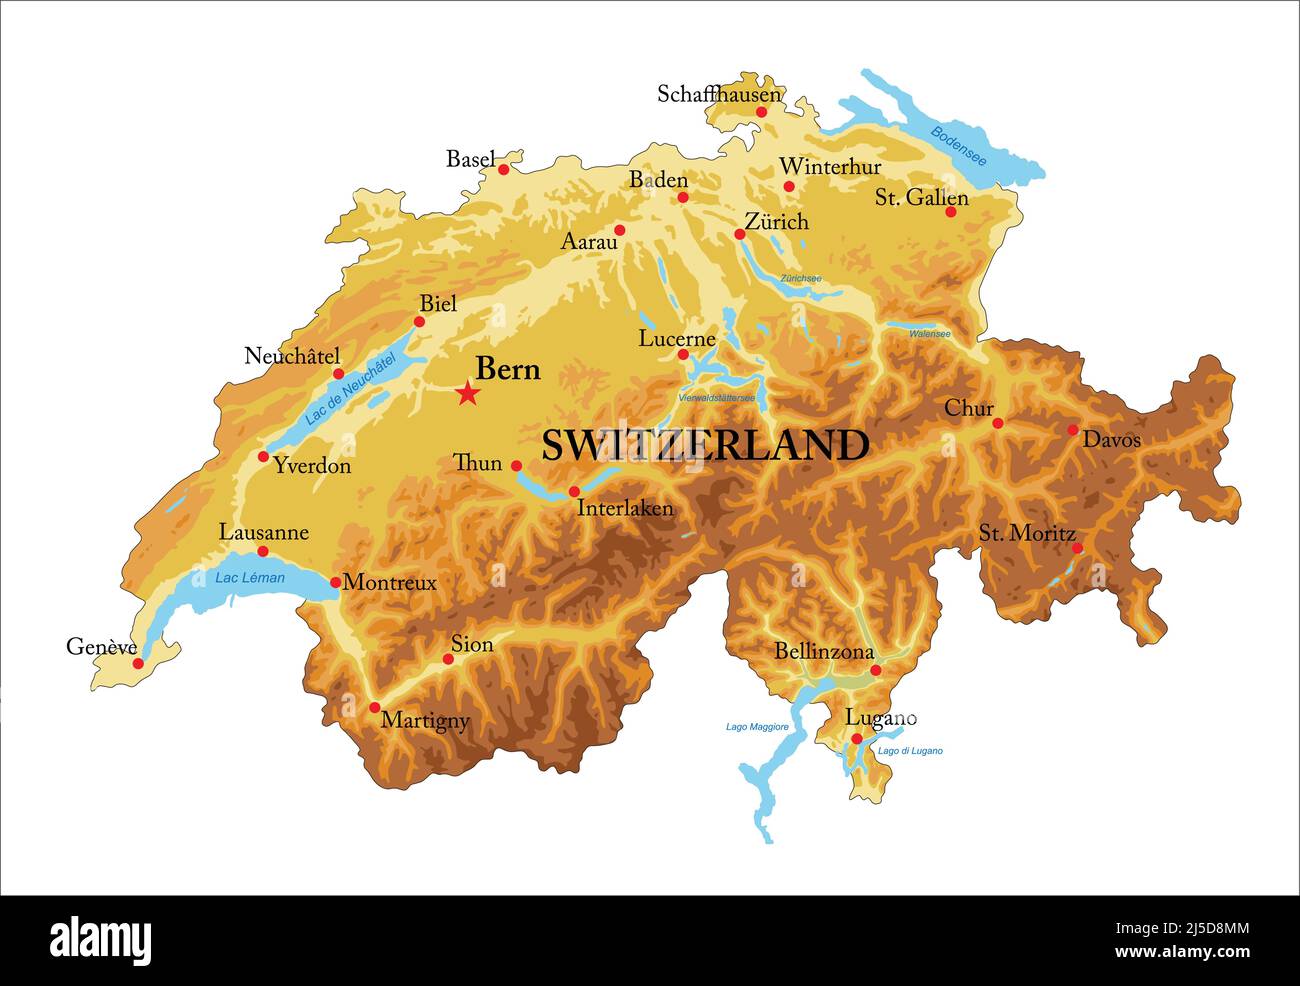 Hochdetaillierte physische Karte der Schweiz, im Vektorformat, mit allen Reliefformen, Regionen und großen Städten. Stock Vektor